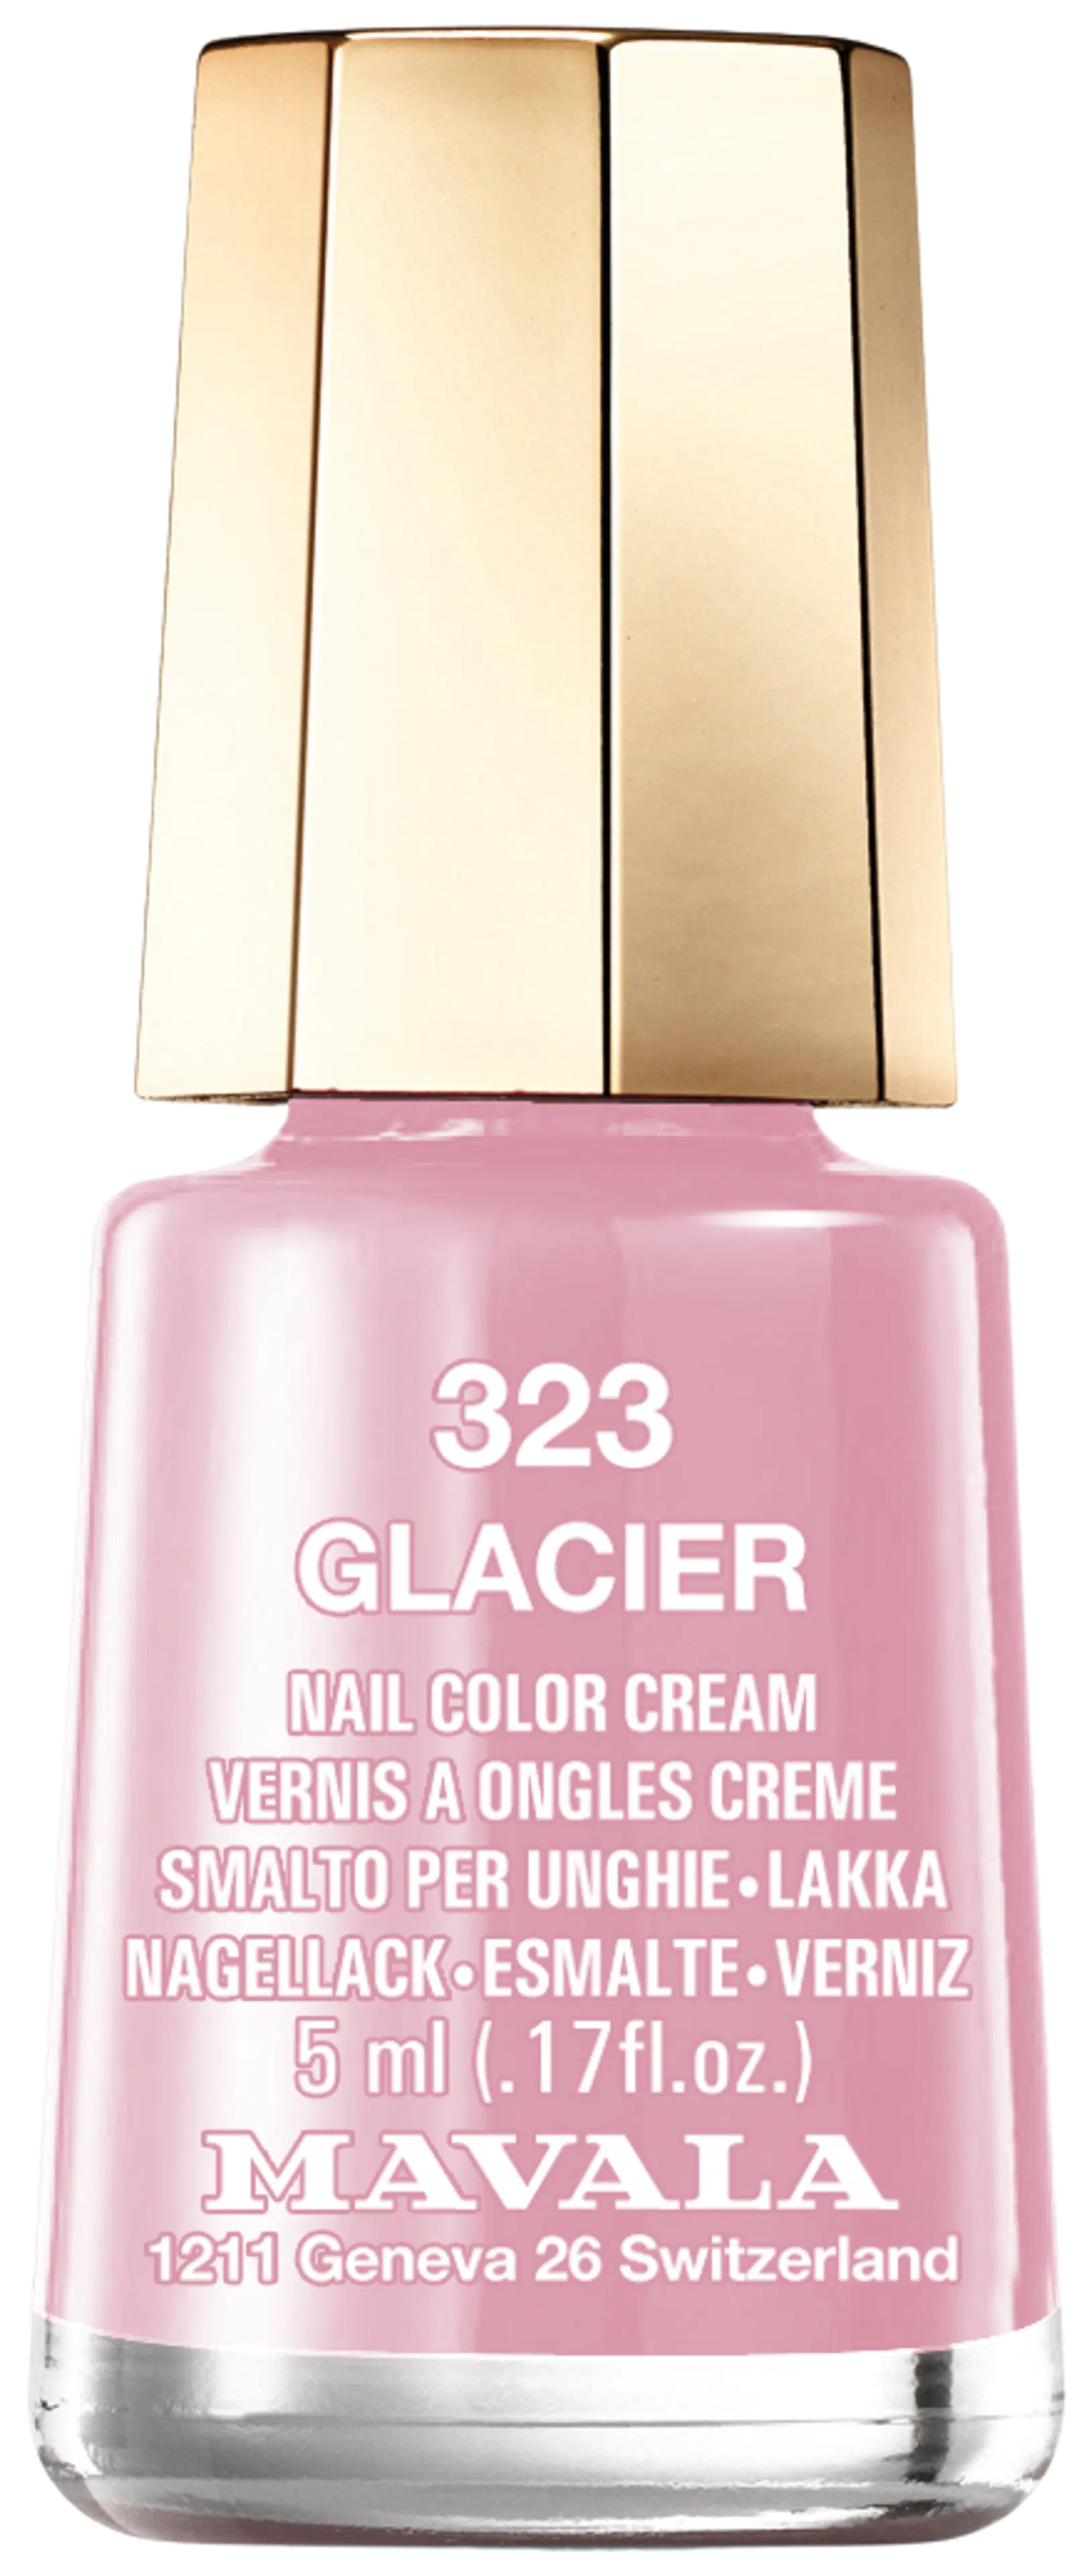 Mavala 5ml nail color cream 323 Glacier kynsilakka